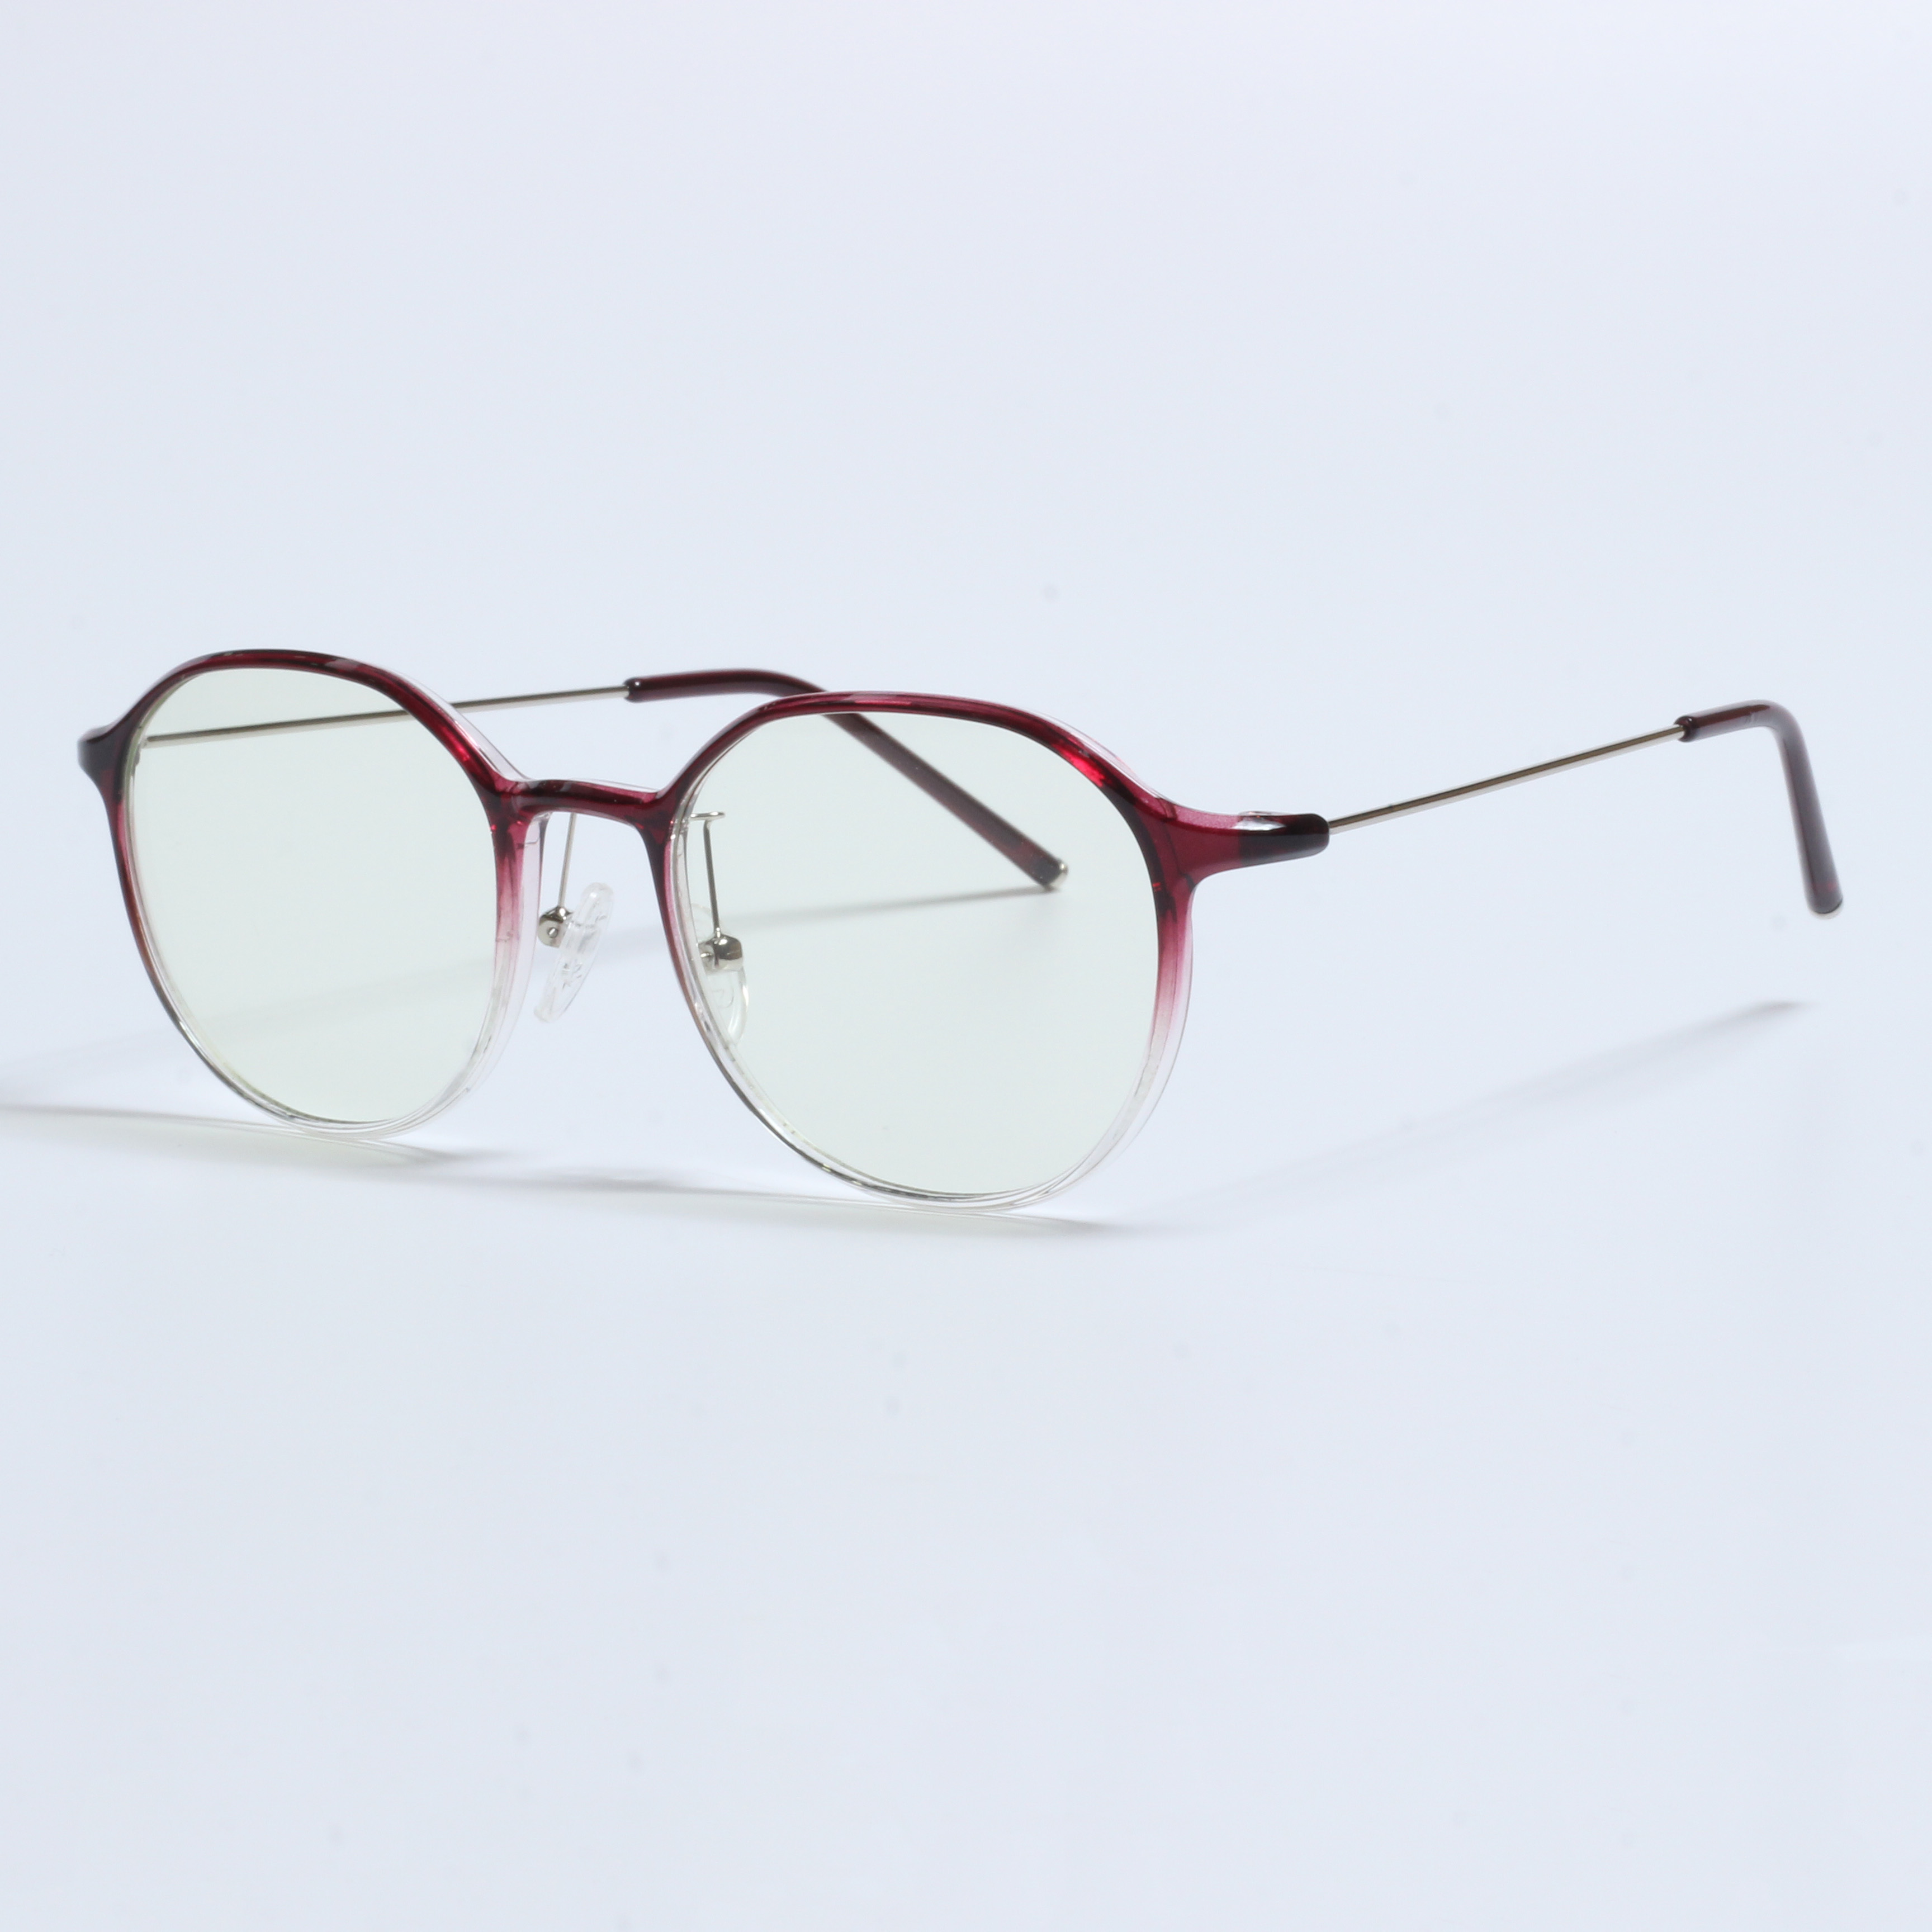 Vintage Thick Gafas Opticas De Hombres Transparent TR90 Frames (11)